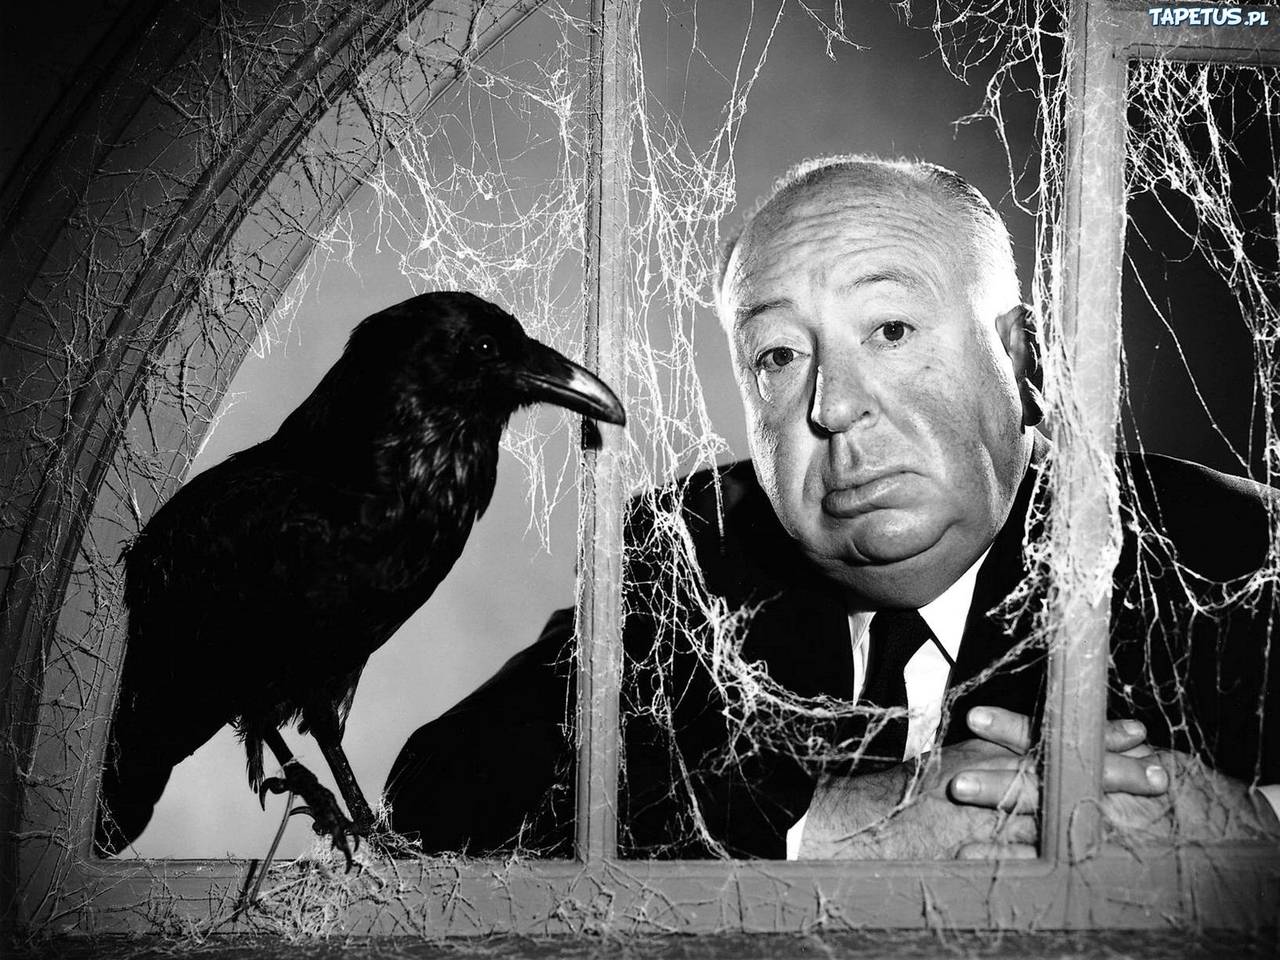 Referente. Alfred Hitchcock comenzó su carrera todavía en la época del cine mudo, aprendiendo los fundamentos de su oficio.